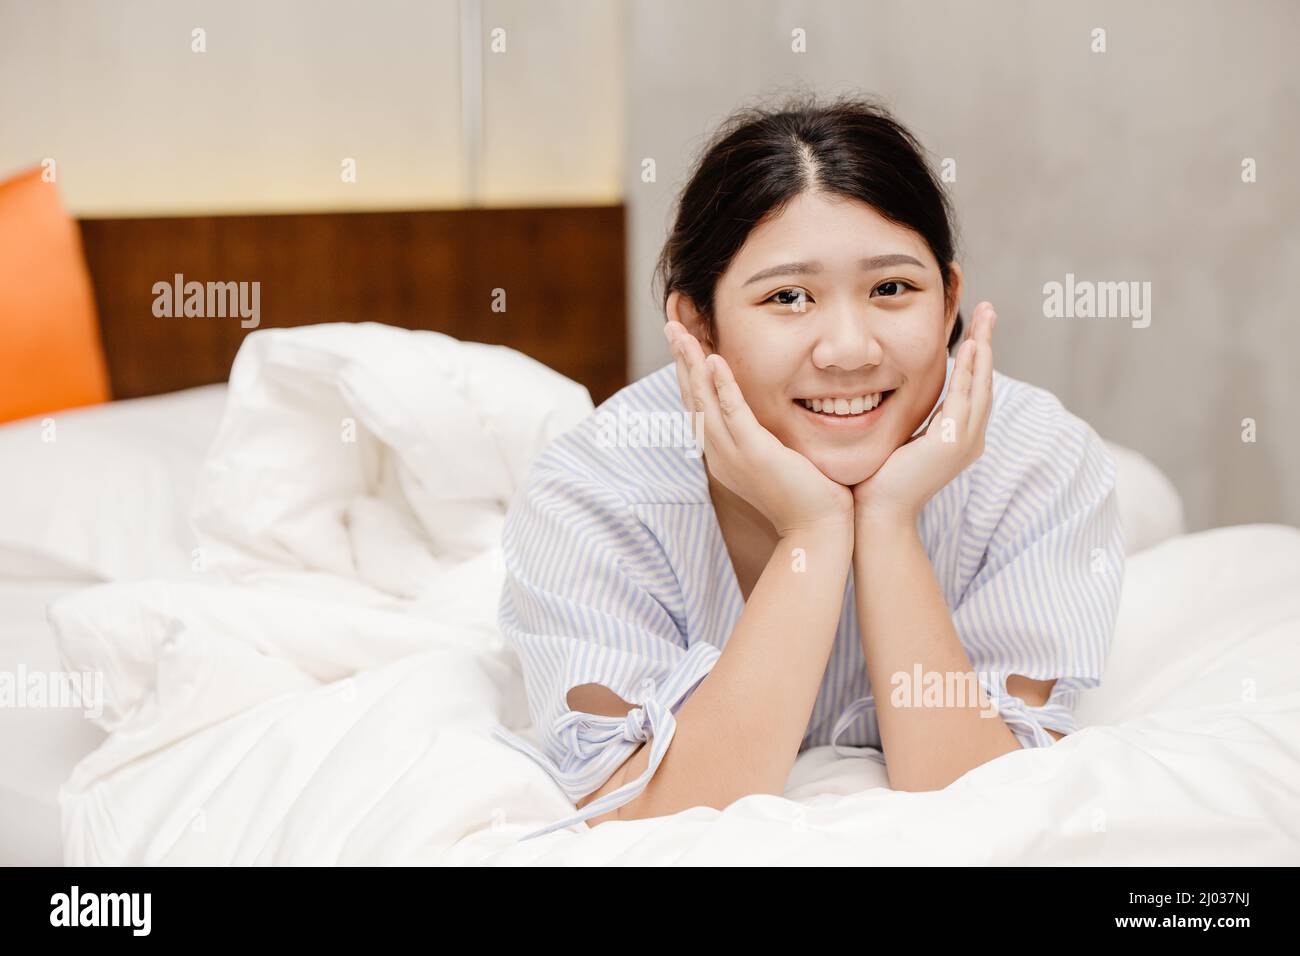 Carino ritratto sano asiatico donna pigro sorriso felice a letto Foto Stock